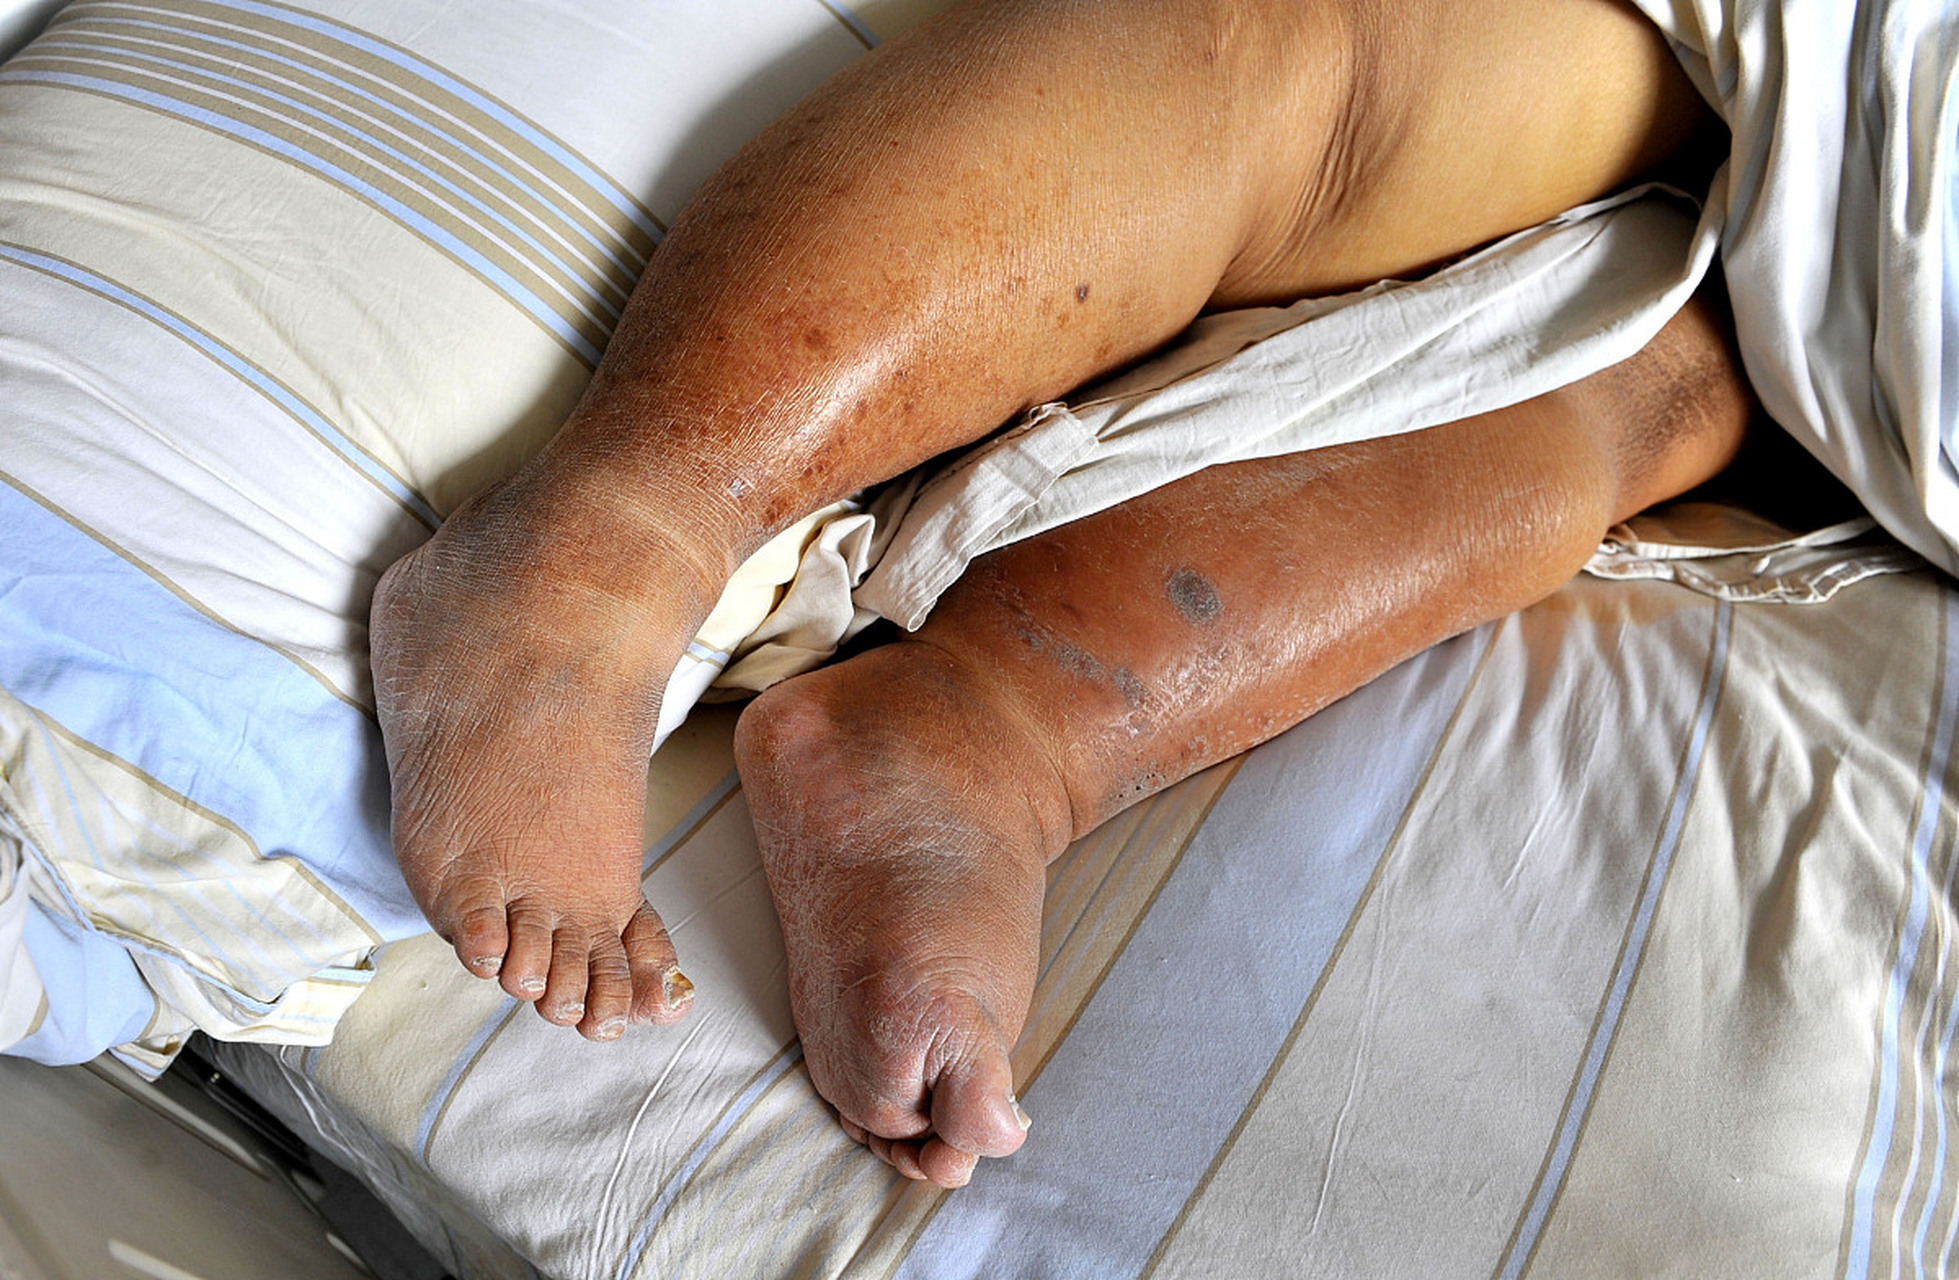 1,皮肤护理:褥疮是因为患者长期卧床,皮肤受压的